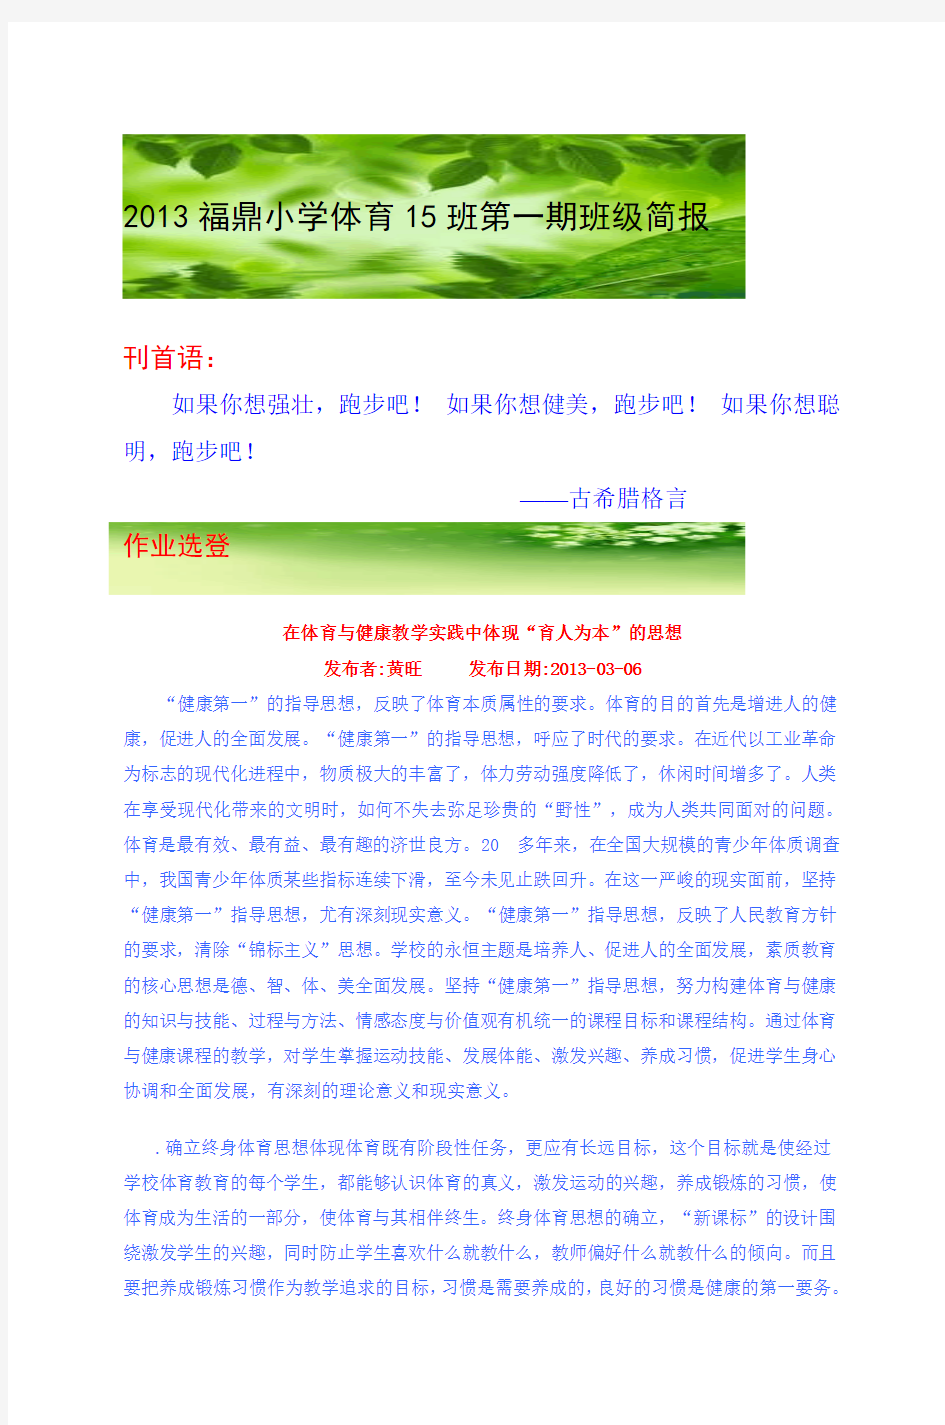 2013福鼎小学体育15班第一期班级简报